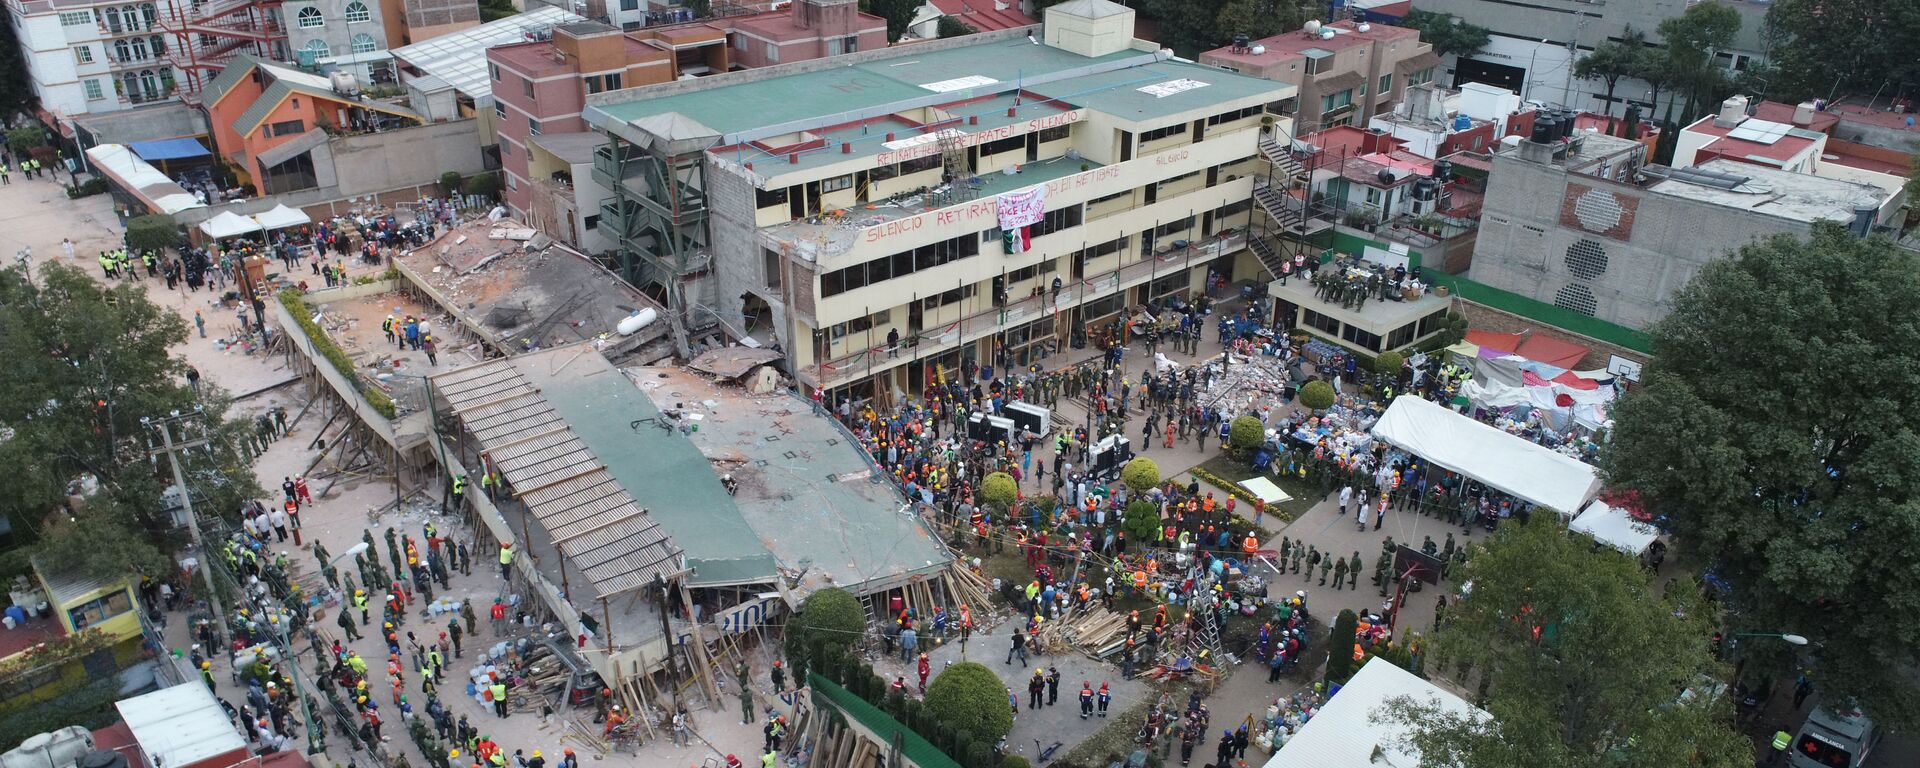 El colegio Rébsamen, destruido por el terremoto en la Ciudad de México - Sputnik Mundo, 1920, 19.09.2020